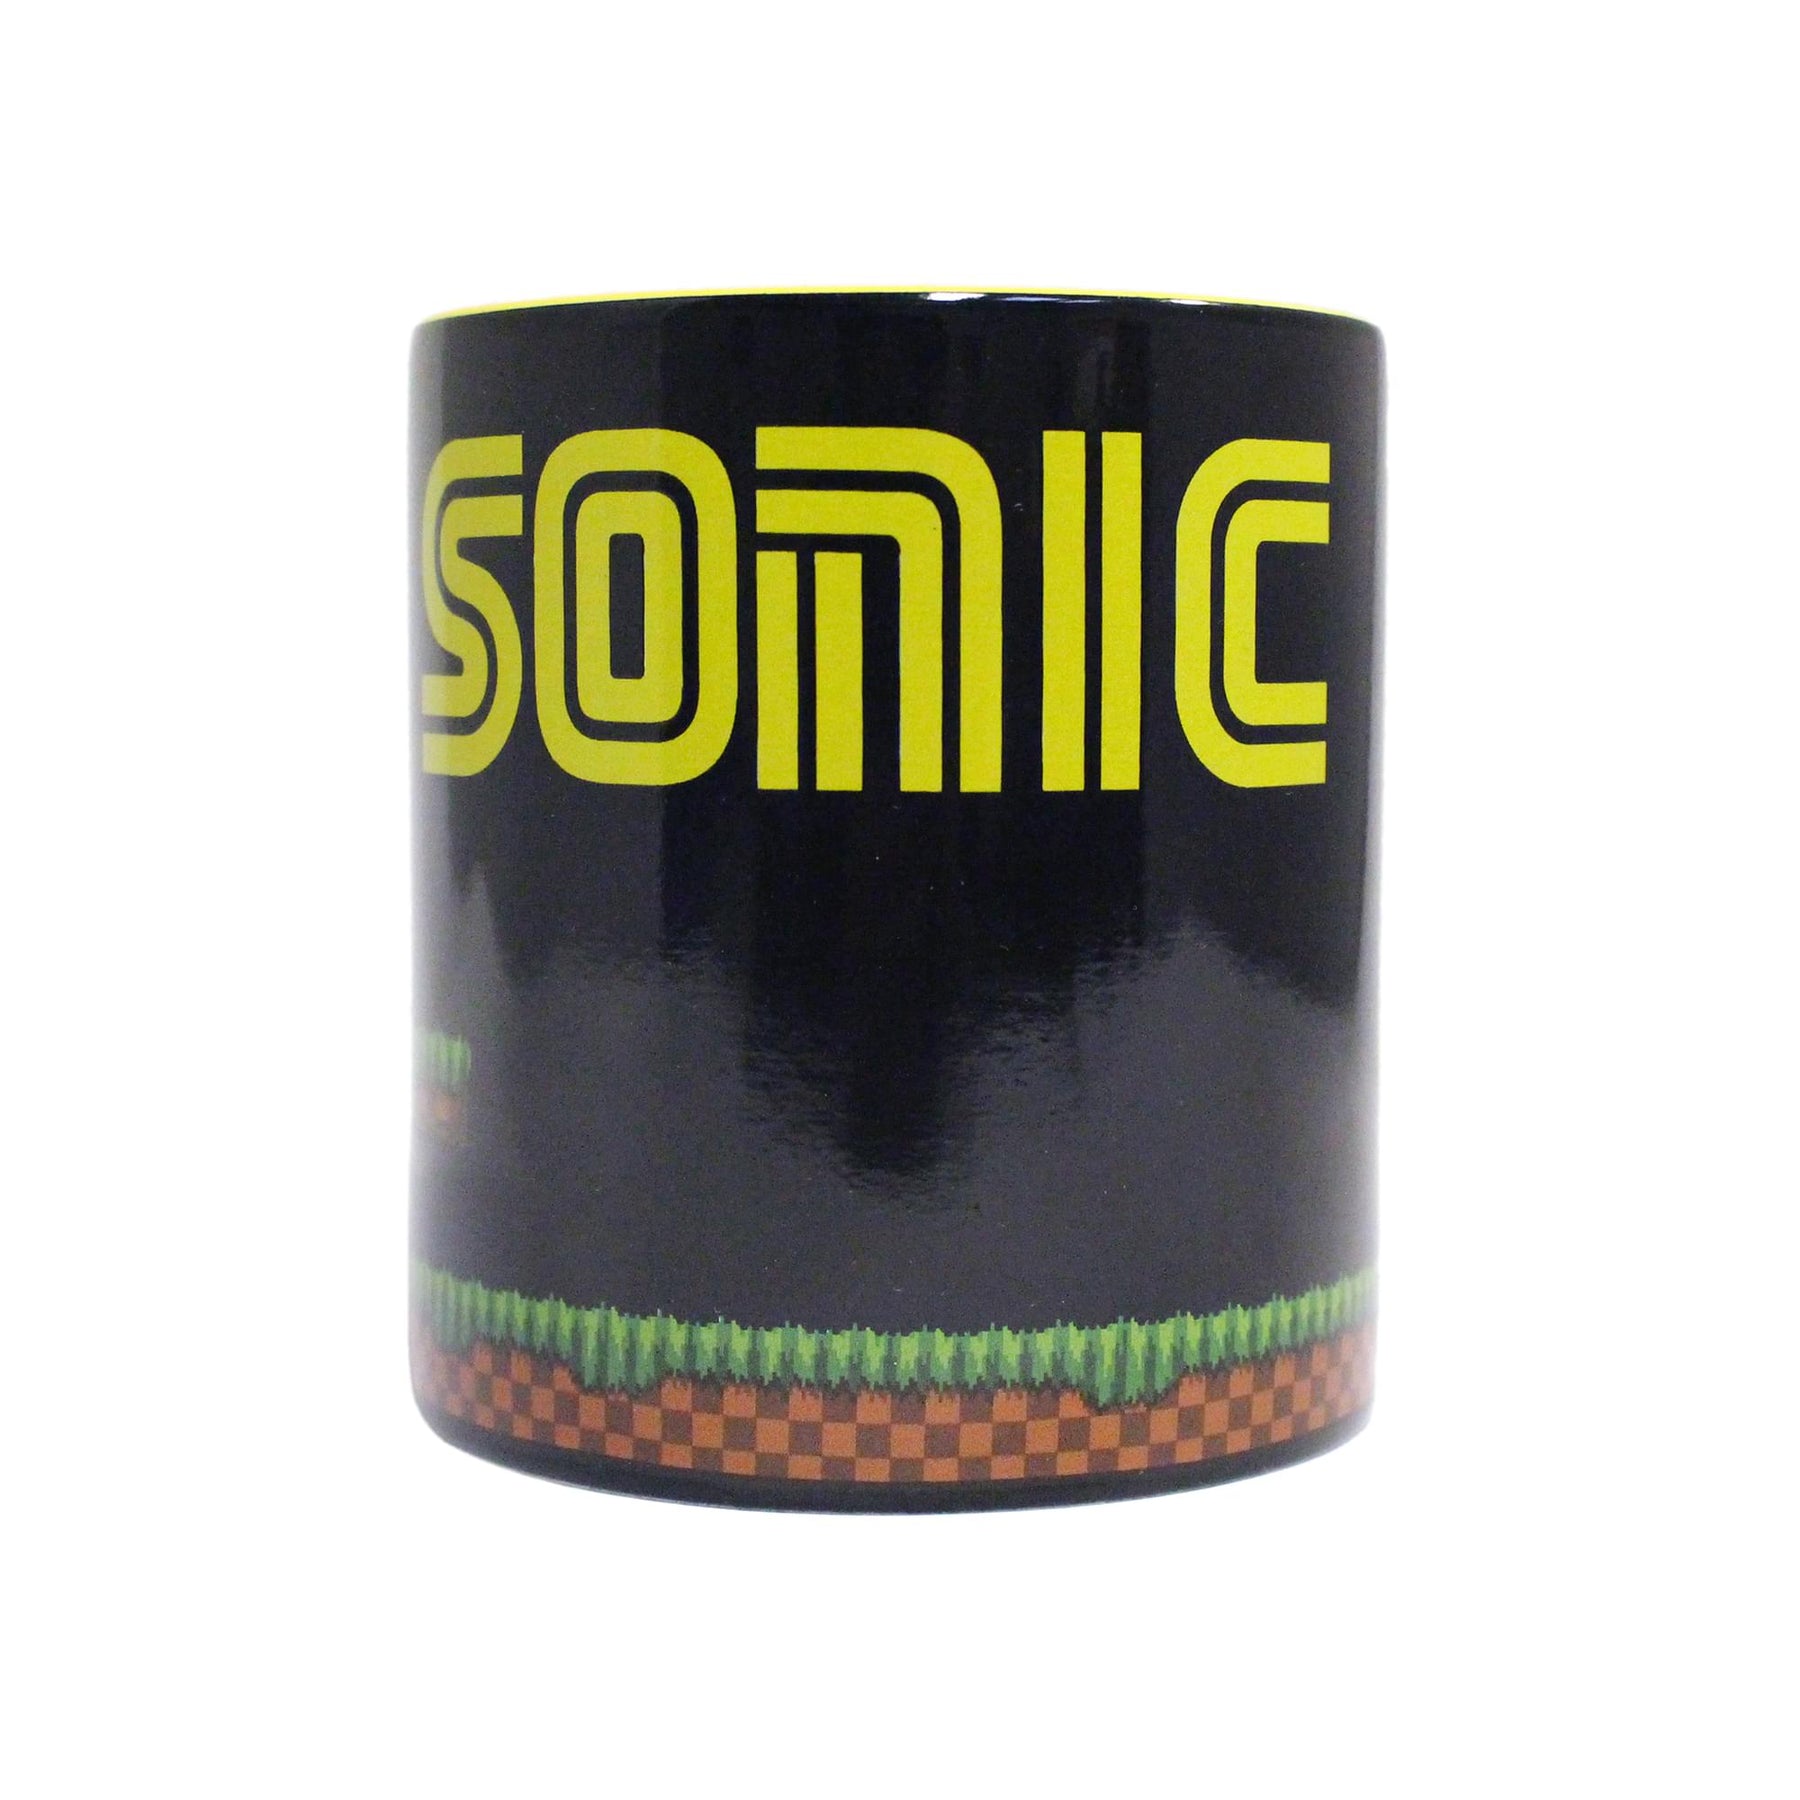 Sonic the Hedgehog Heat-Reveal 20 Ounce Ceramic Mug